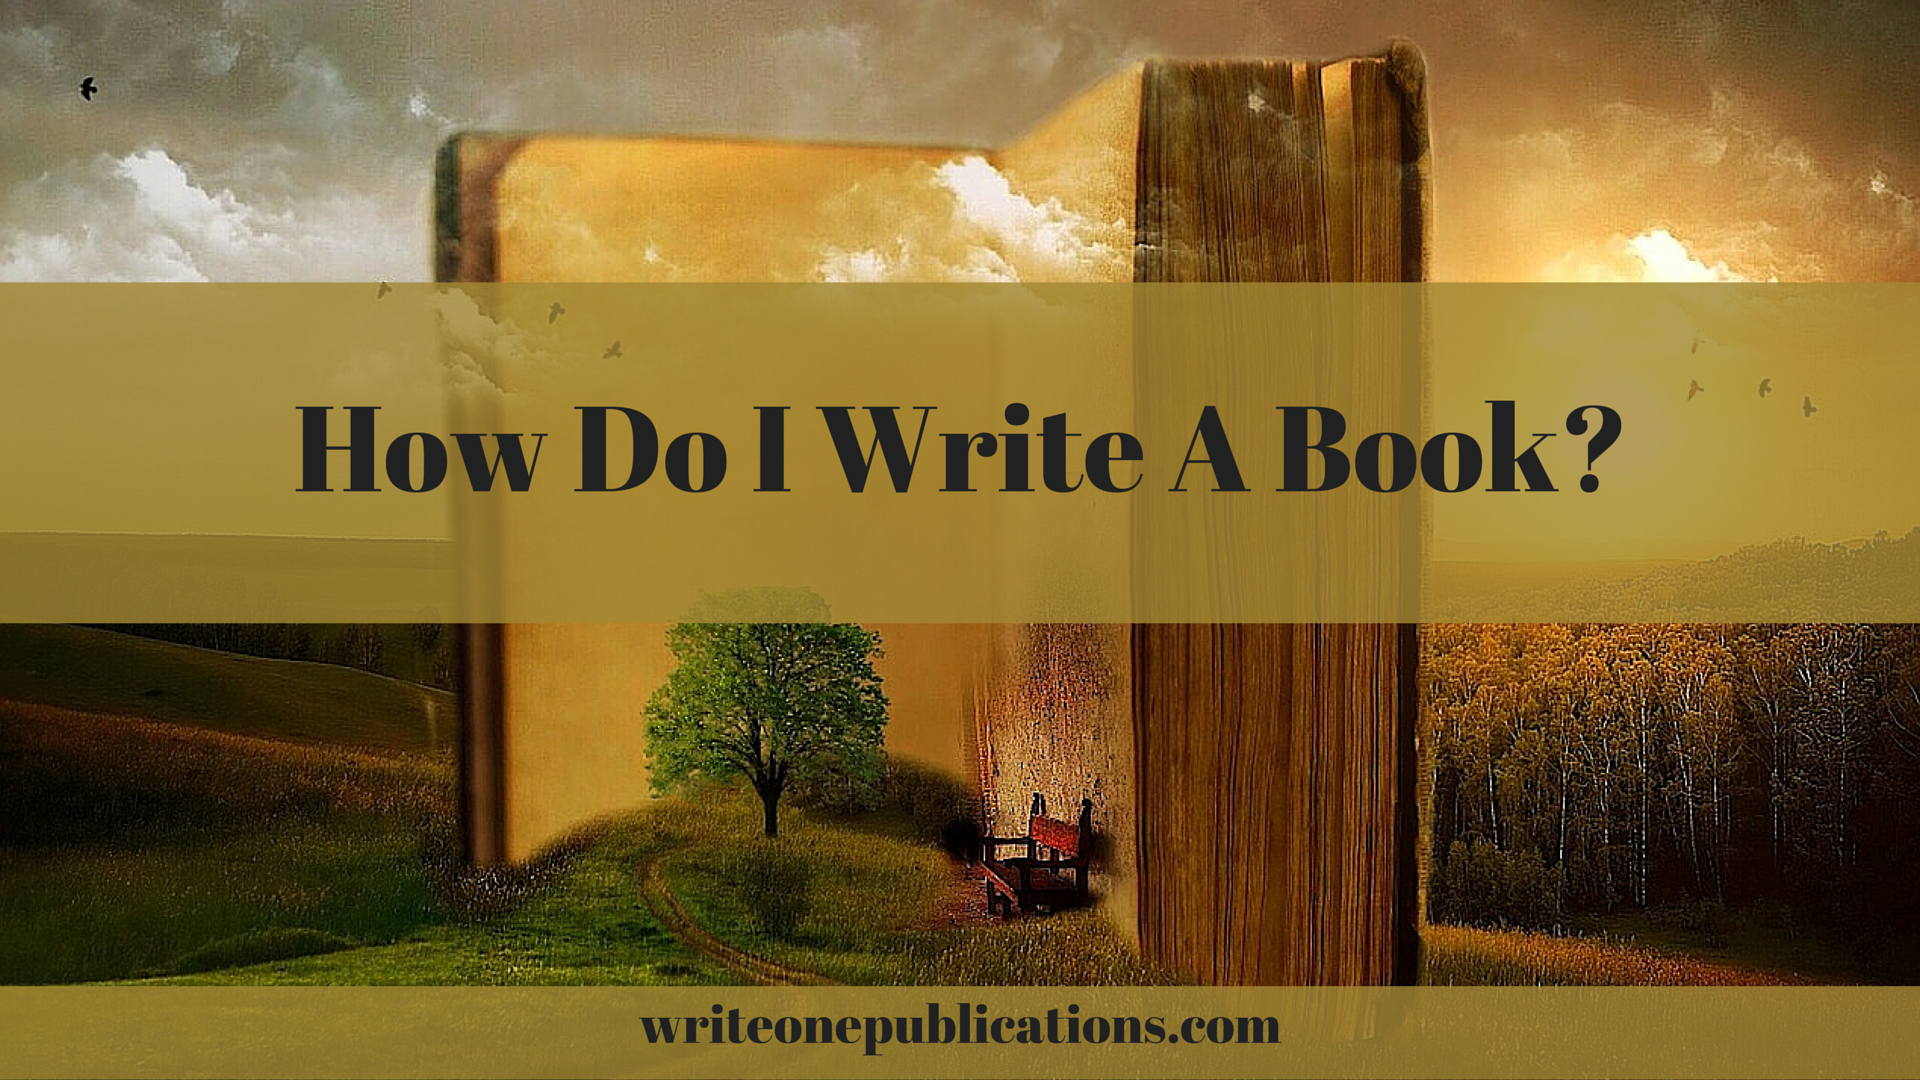 How Do I Write A Book?